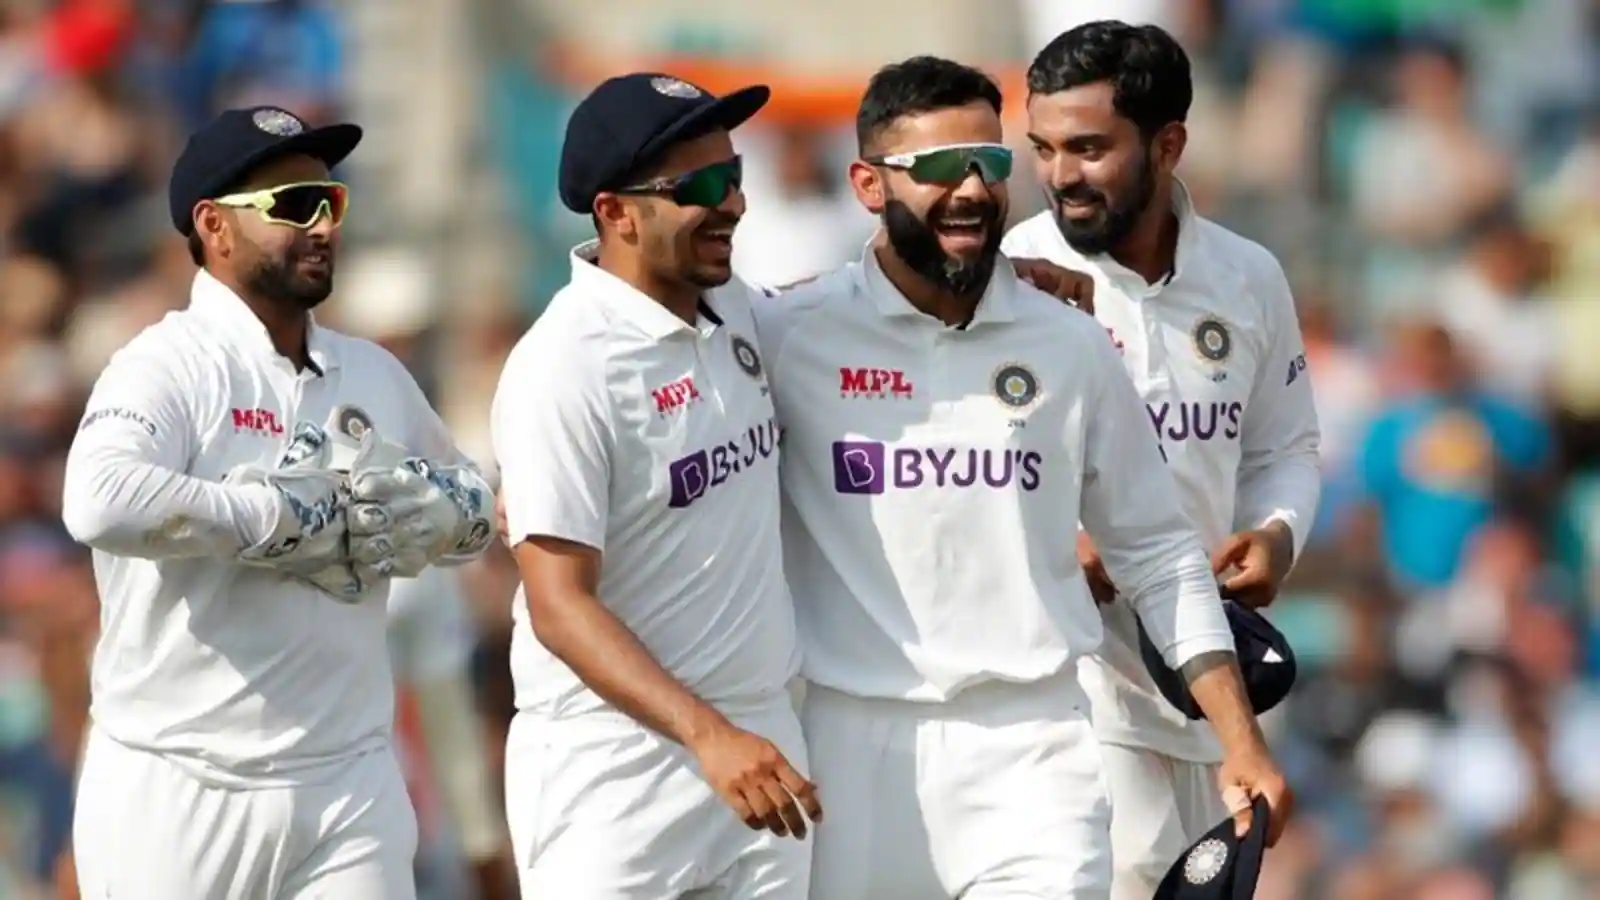 India vs England Test: भारत के 11 शेर, हैदराबाद टेस्ट के लिए 3 स्पिनर और 5 स्पेशलिस्ट बल्लेबाज हैं।